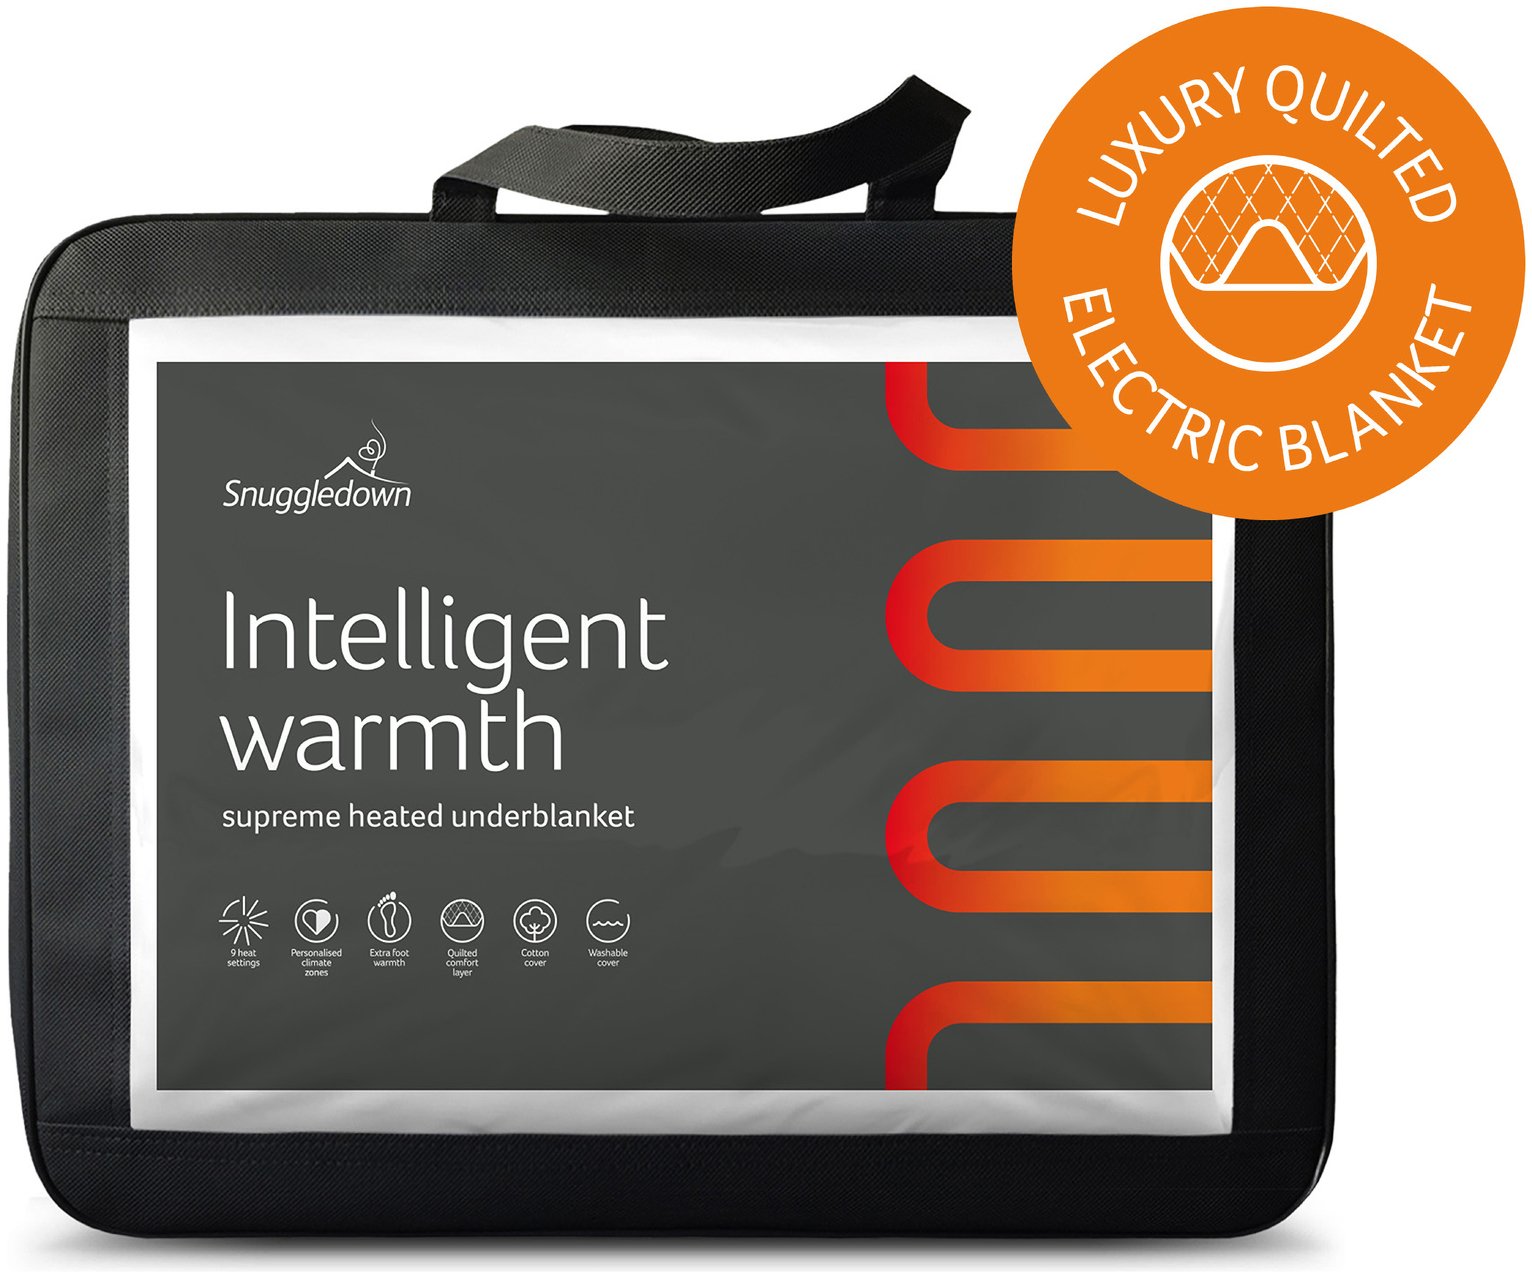 Snuggledown Intelligent Warmth Underblanket - SuperKing